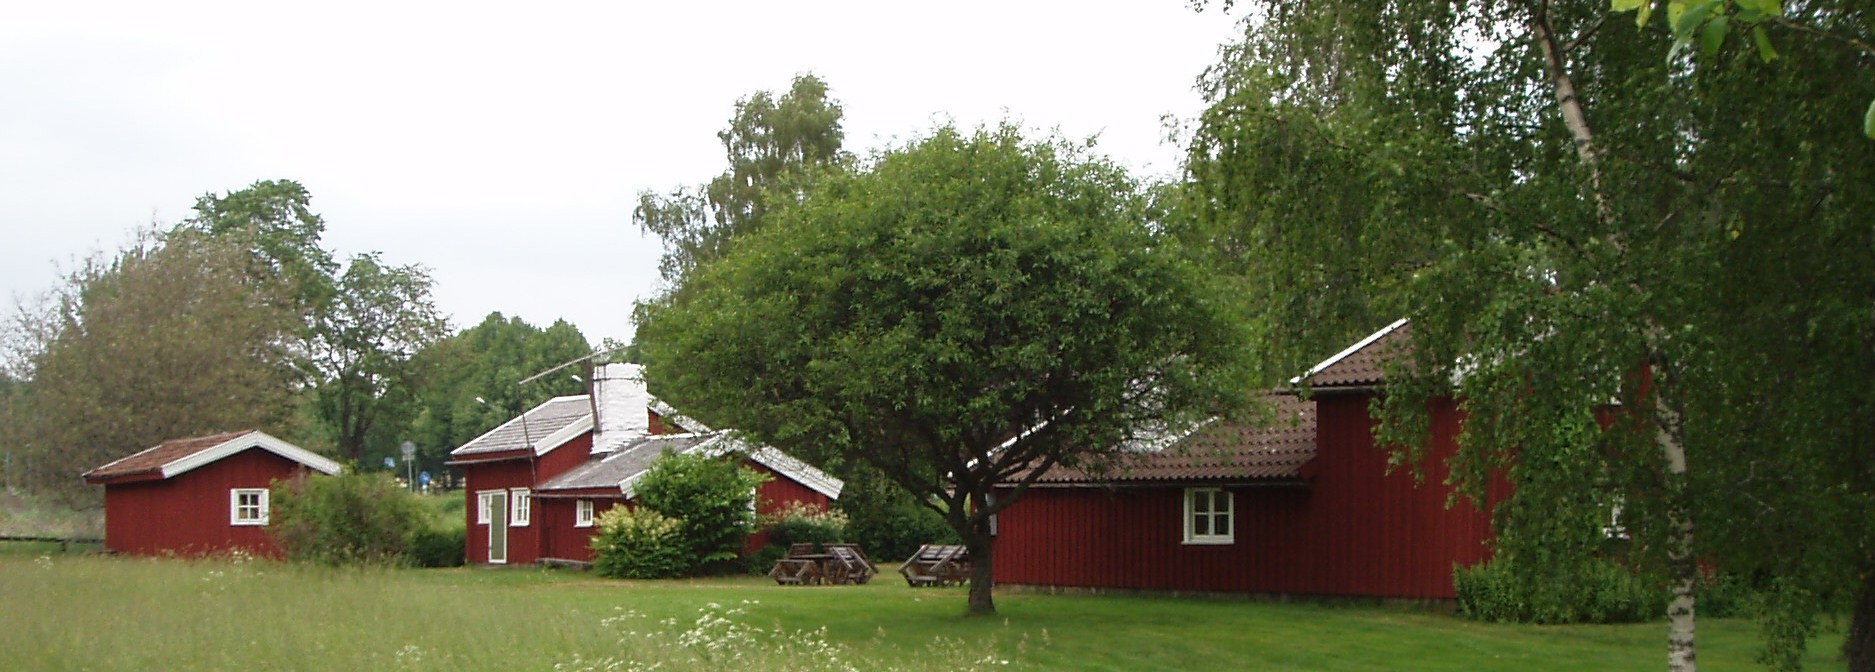 De är s k högloftshus eller sydgötiska hus och sättet att bygga på är mycket gammalt. Högloftshus finns mest i södra Sverige och stugorna i Fristad tillhör de nordligaste förekomsterna.